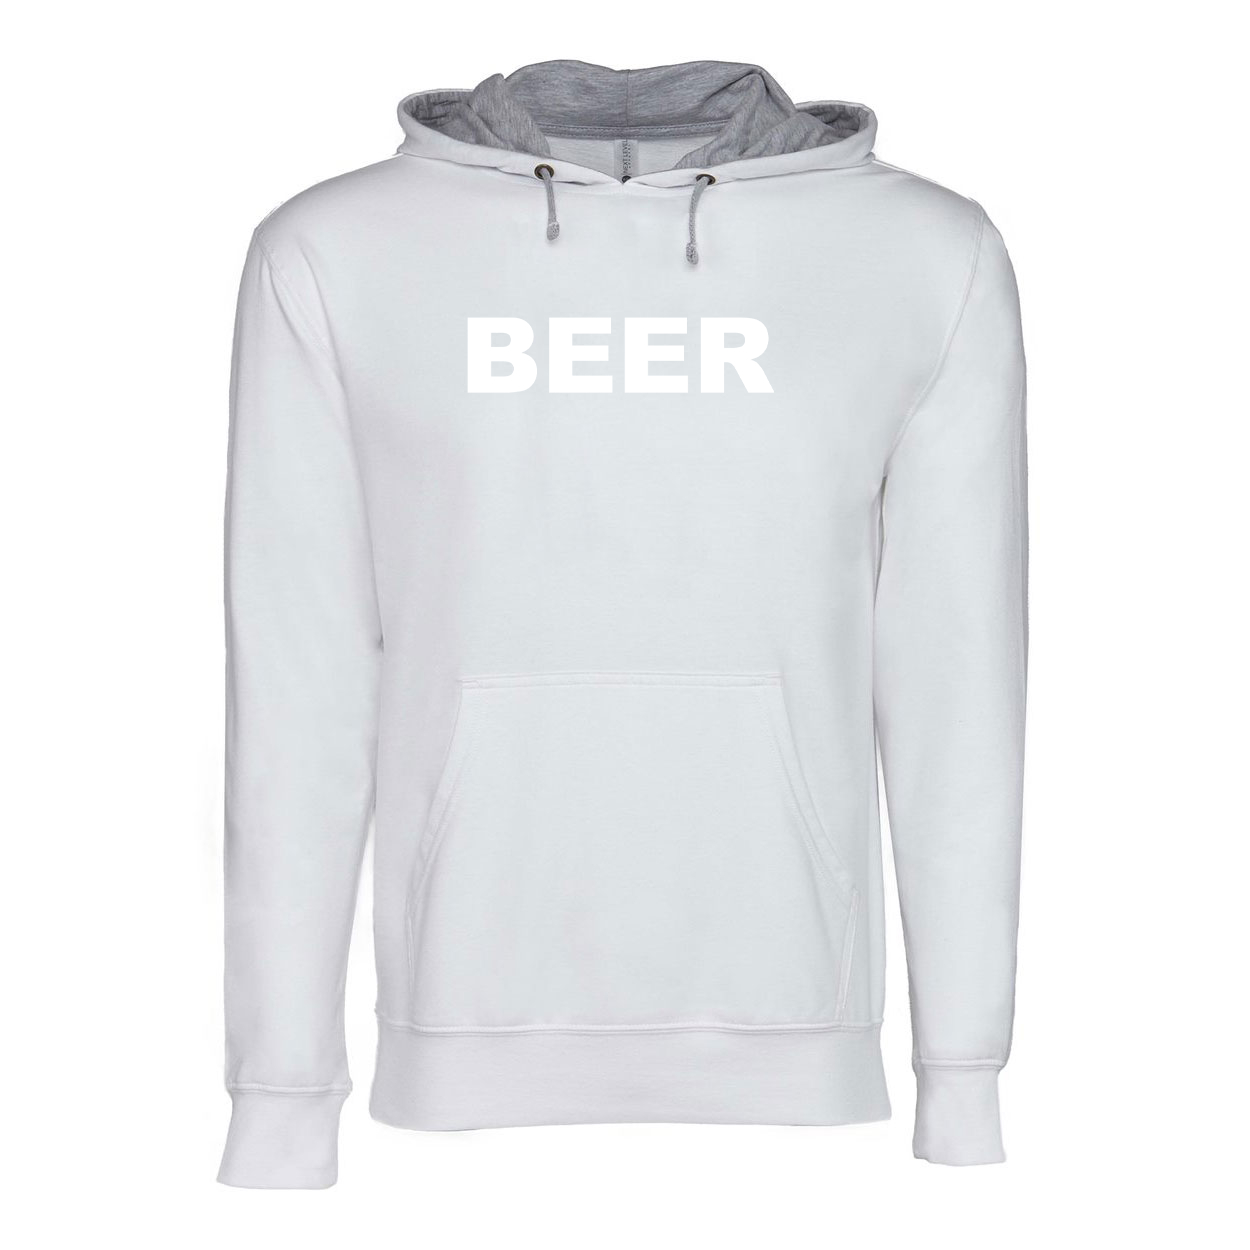 Beer Brand Logo Classic Lightweight Sweatshirt White/Heather Gray 